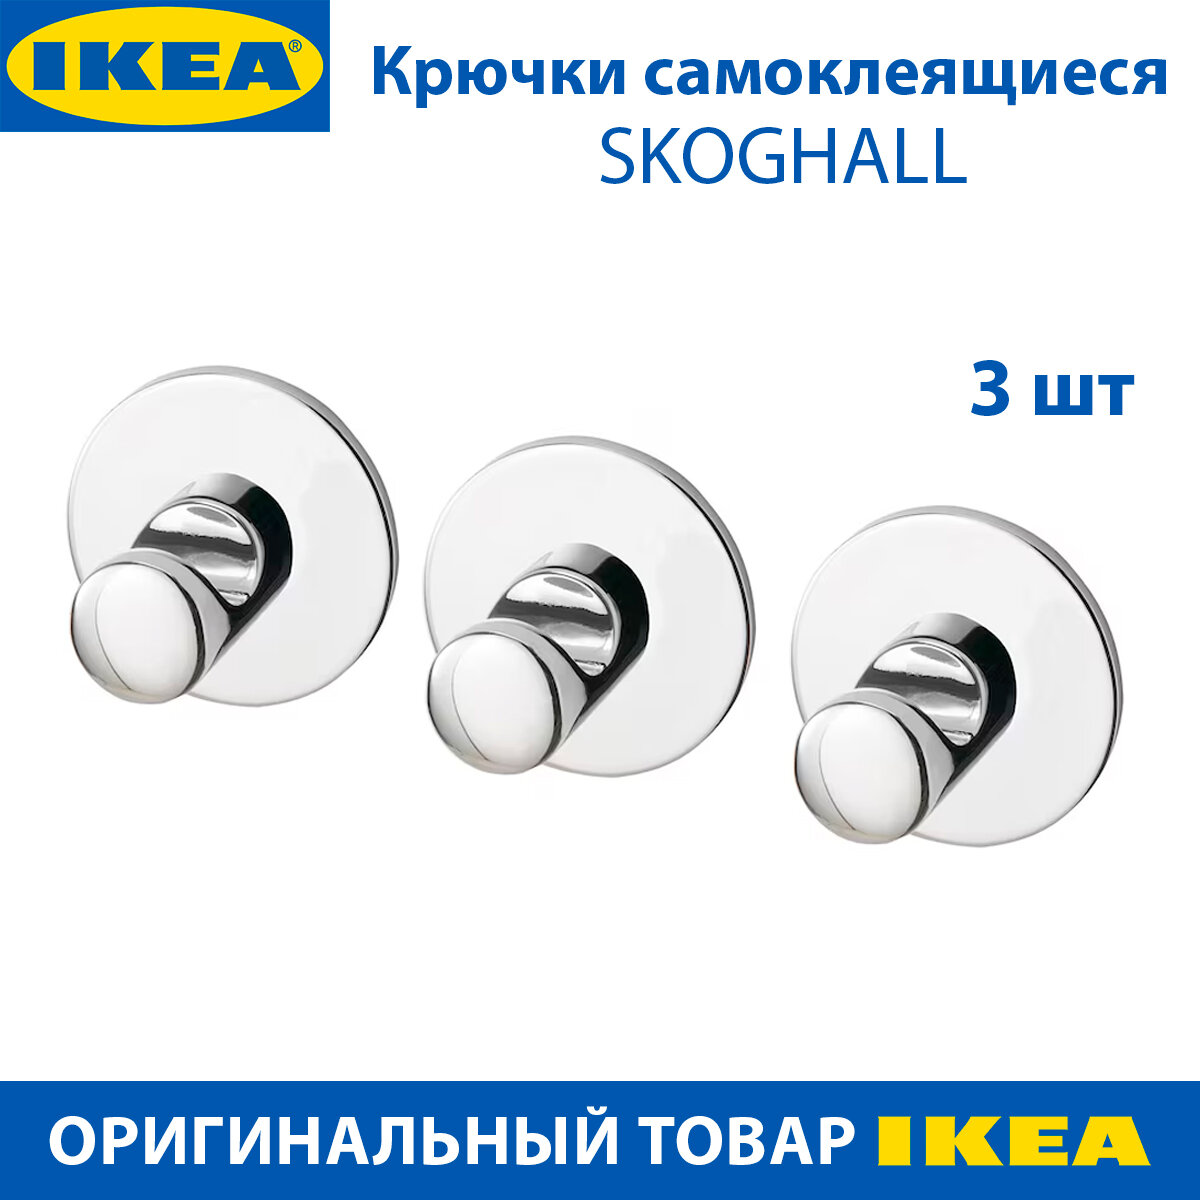 Крючки настенные самоклеящиеся для ванной IKEA SKOGHALL (скугхаль), хромированные, 3 шт в упаковке